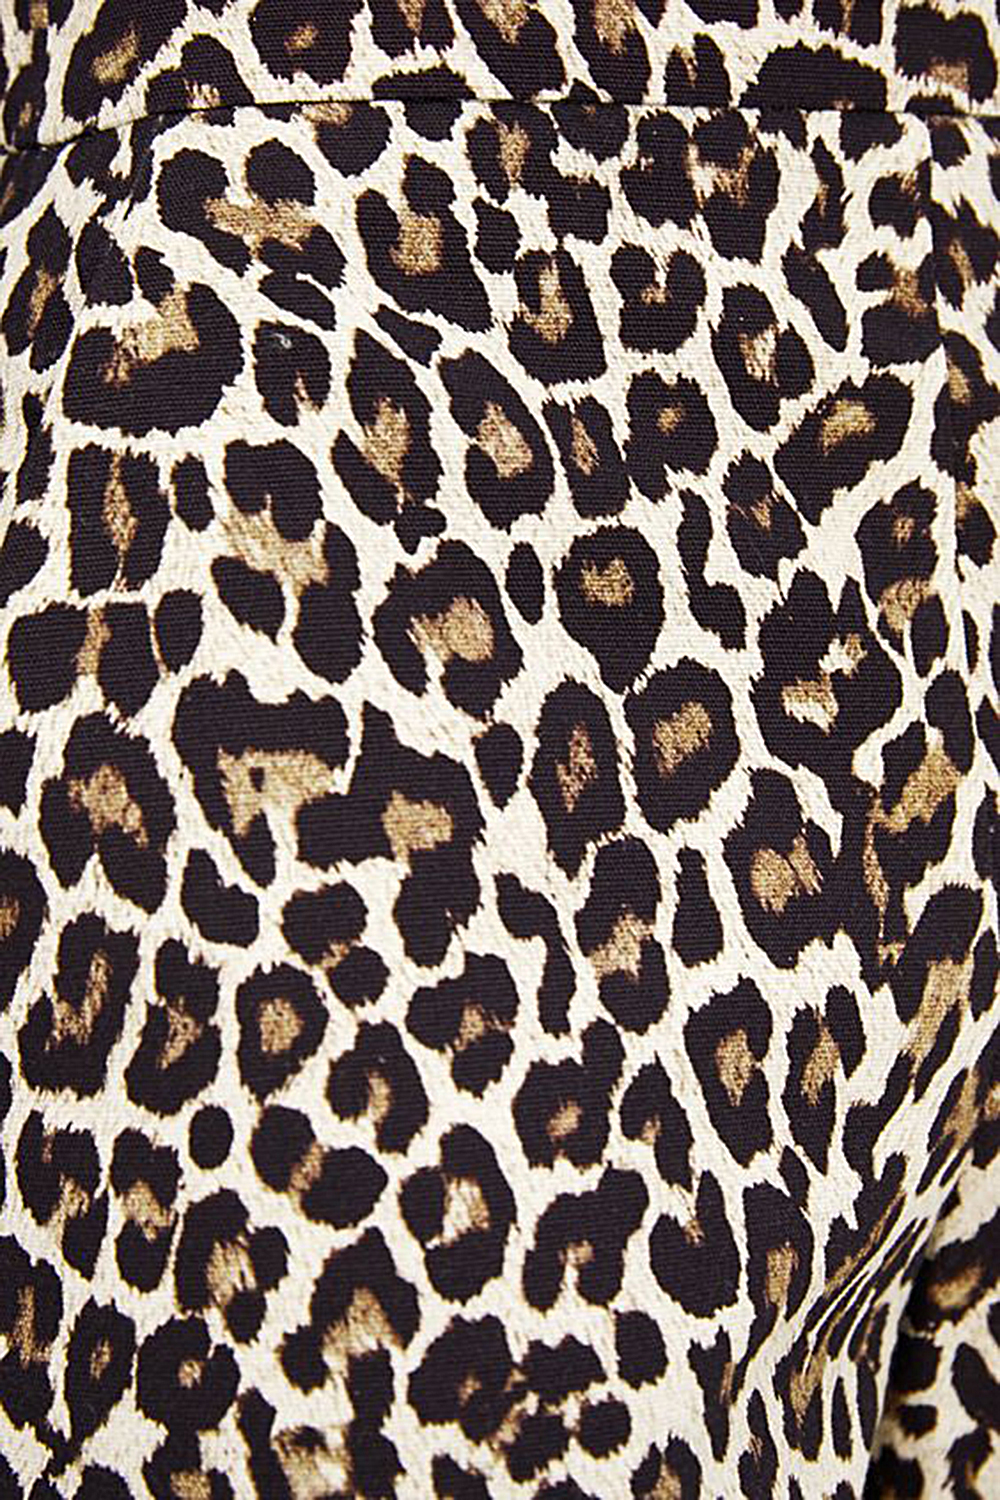 动物毛皮地毯皮毛豹纹图案地毯170